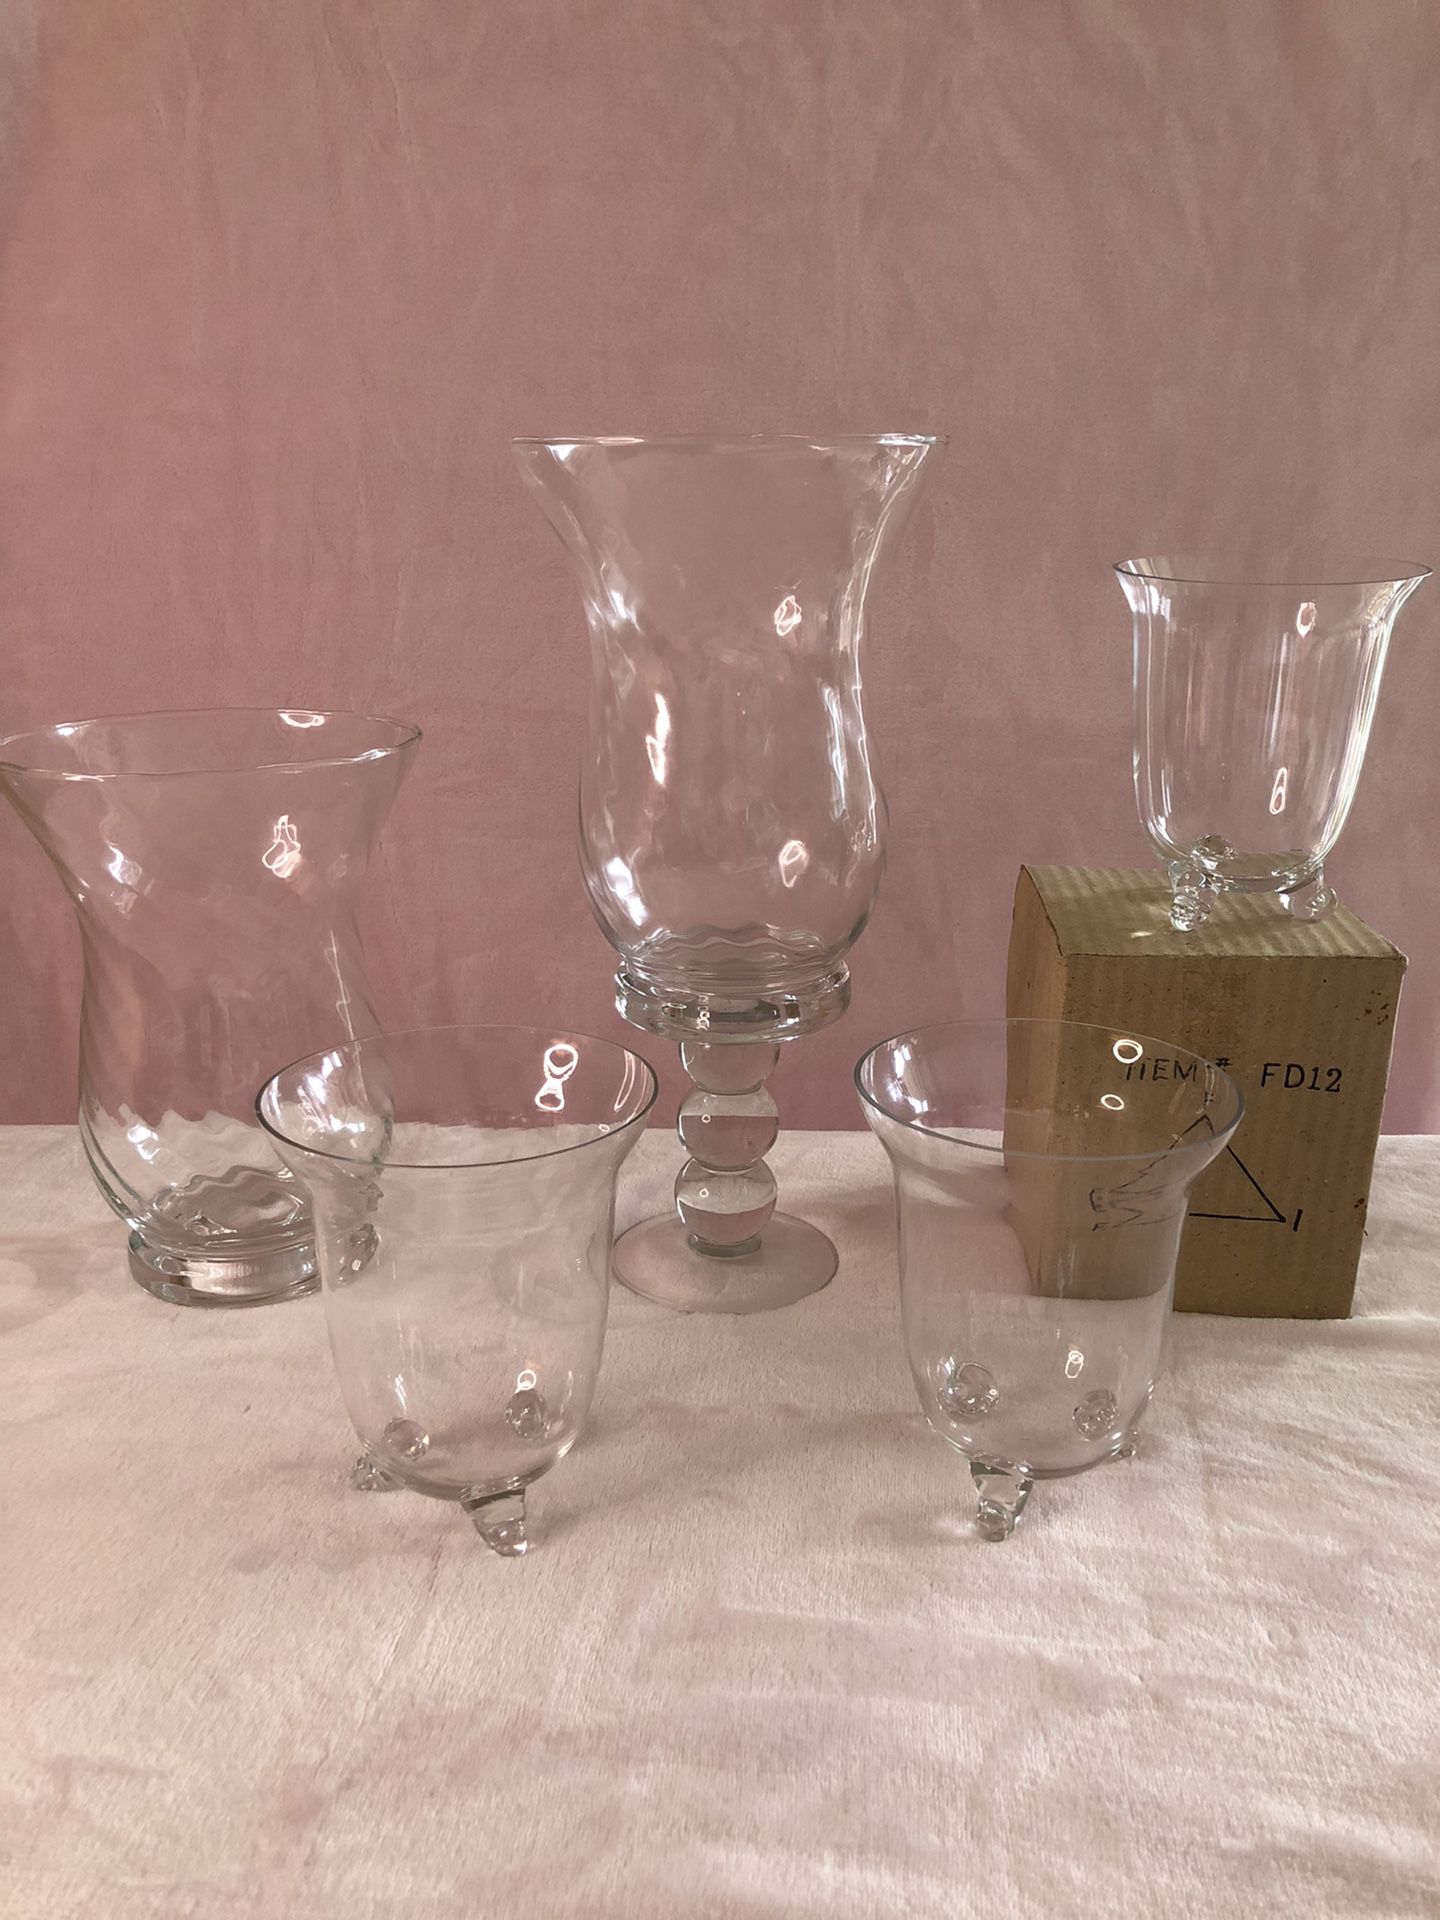 75 glass vases plus 4 taller vases